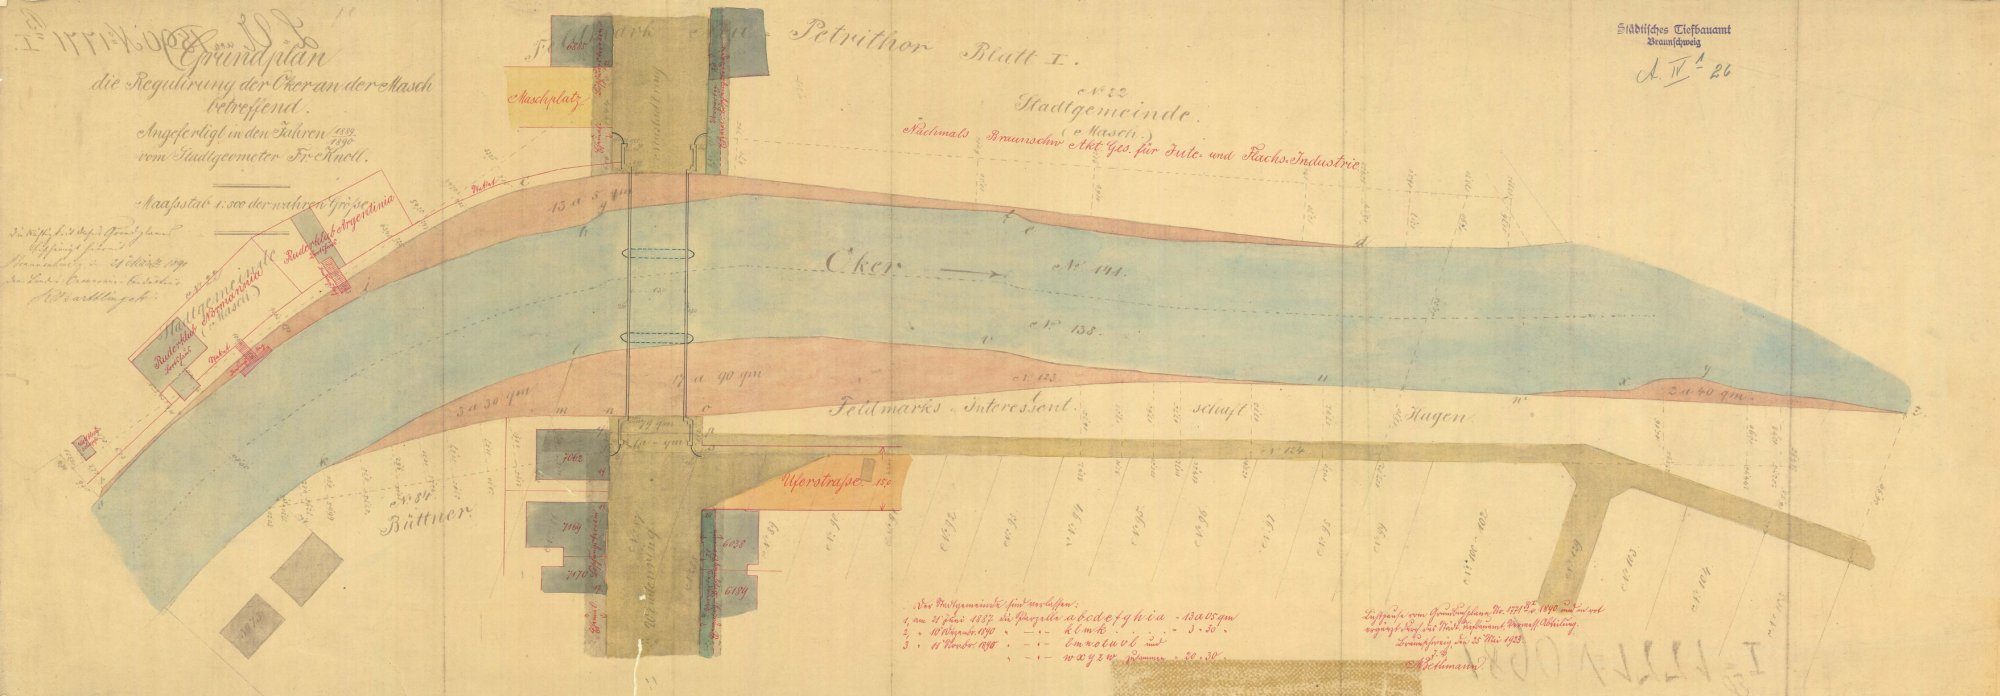 Wendenringbrücke, Planung des nördlichen Rings, Lageplan, 1890 (Wird bei Klick vergrößert)